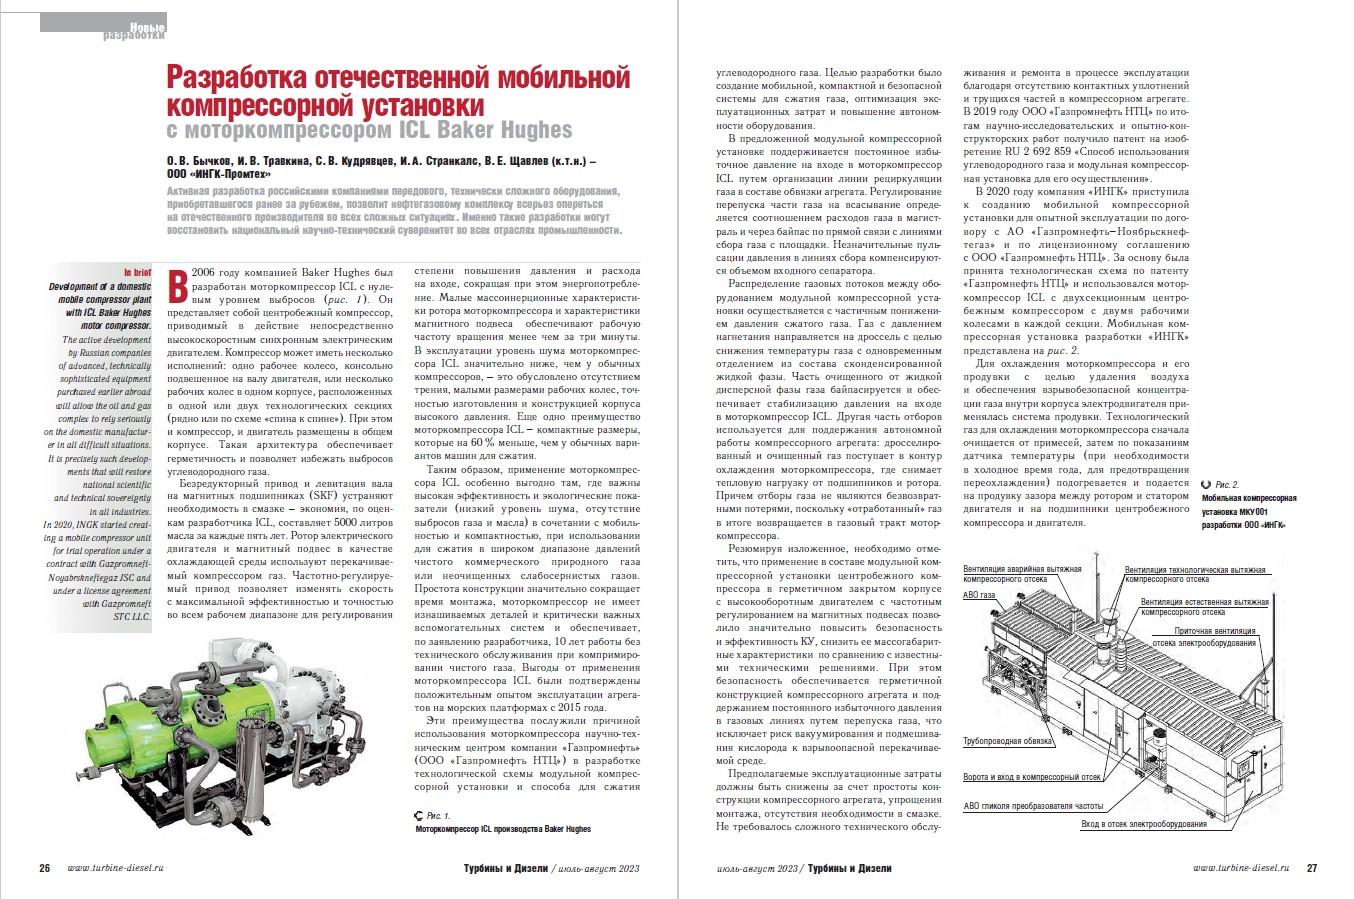 Журнал "Турбины и Дизели" опубликовал статью о перспективной разработке компании ИНГК- Отечественной мобильной компрессорной установке